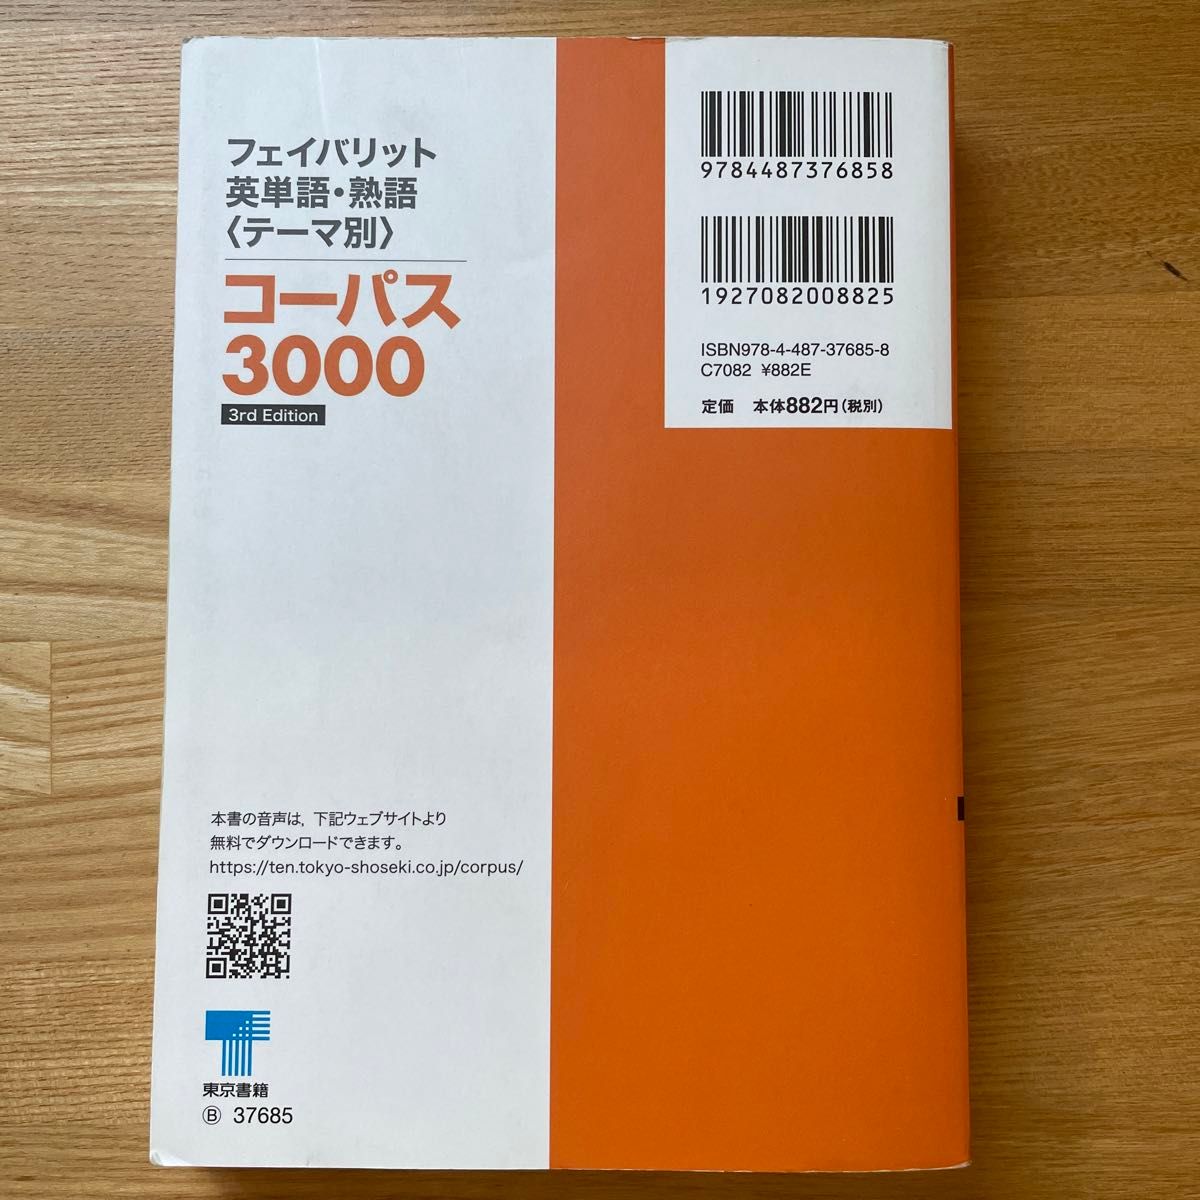 コーパス3000 フェイバリット英単語・熟語〈テーマ別〉3rd Edition